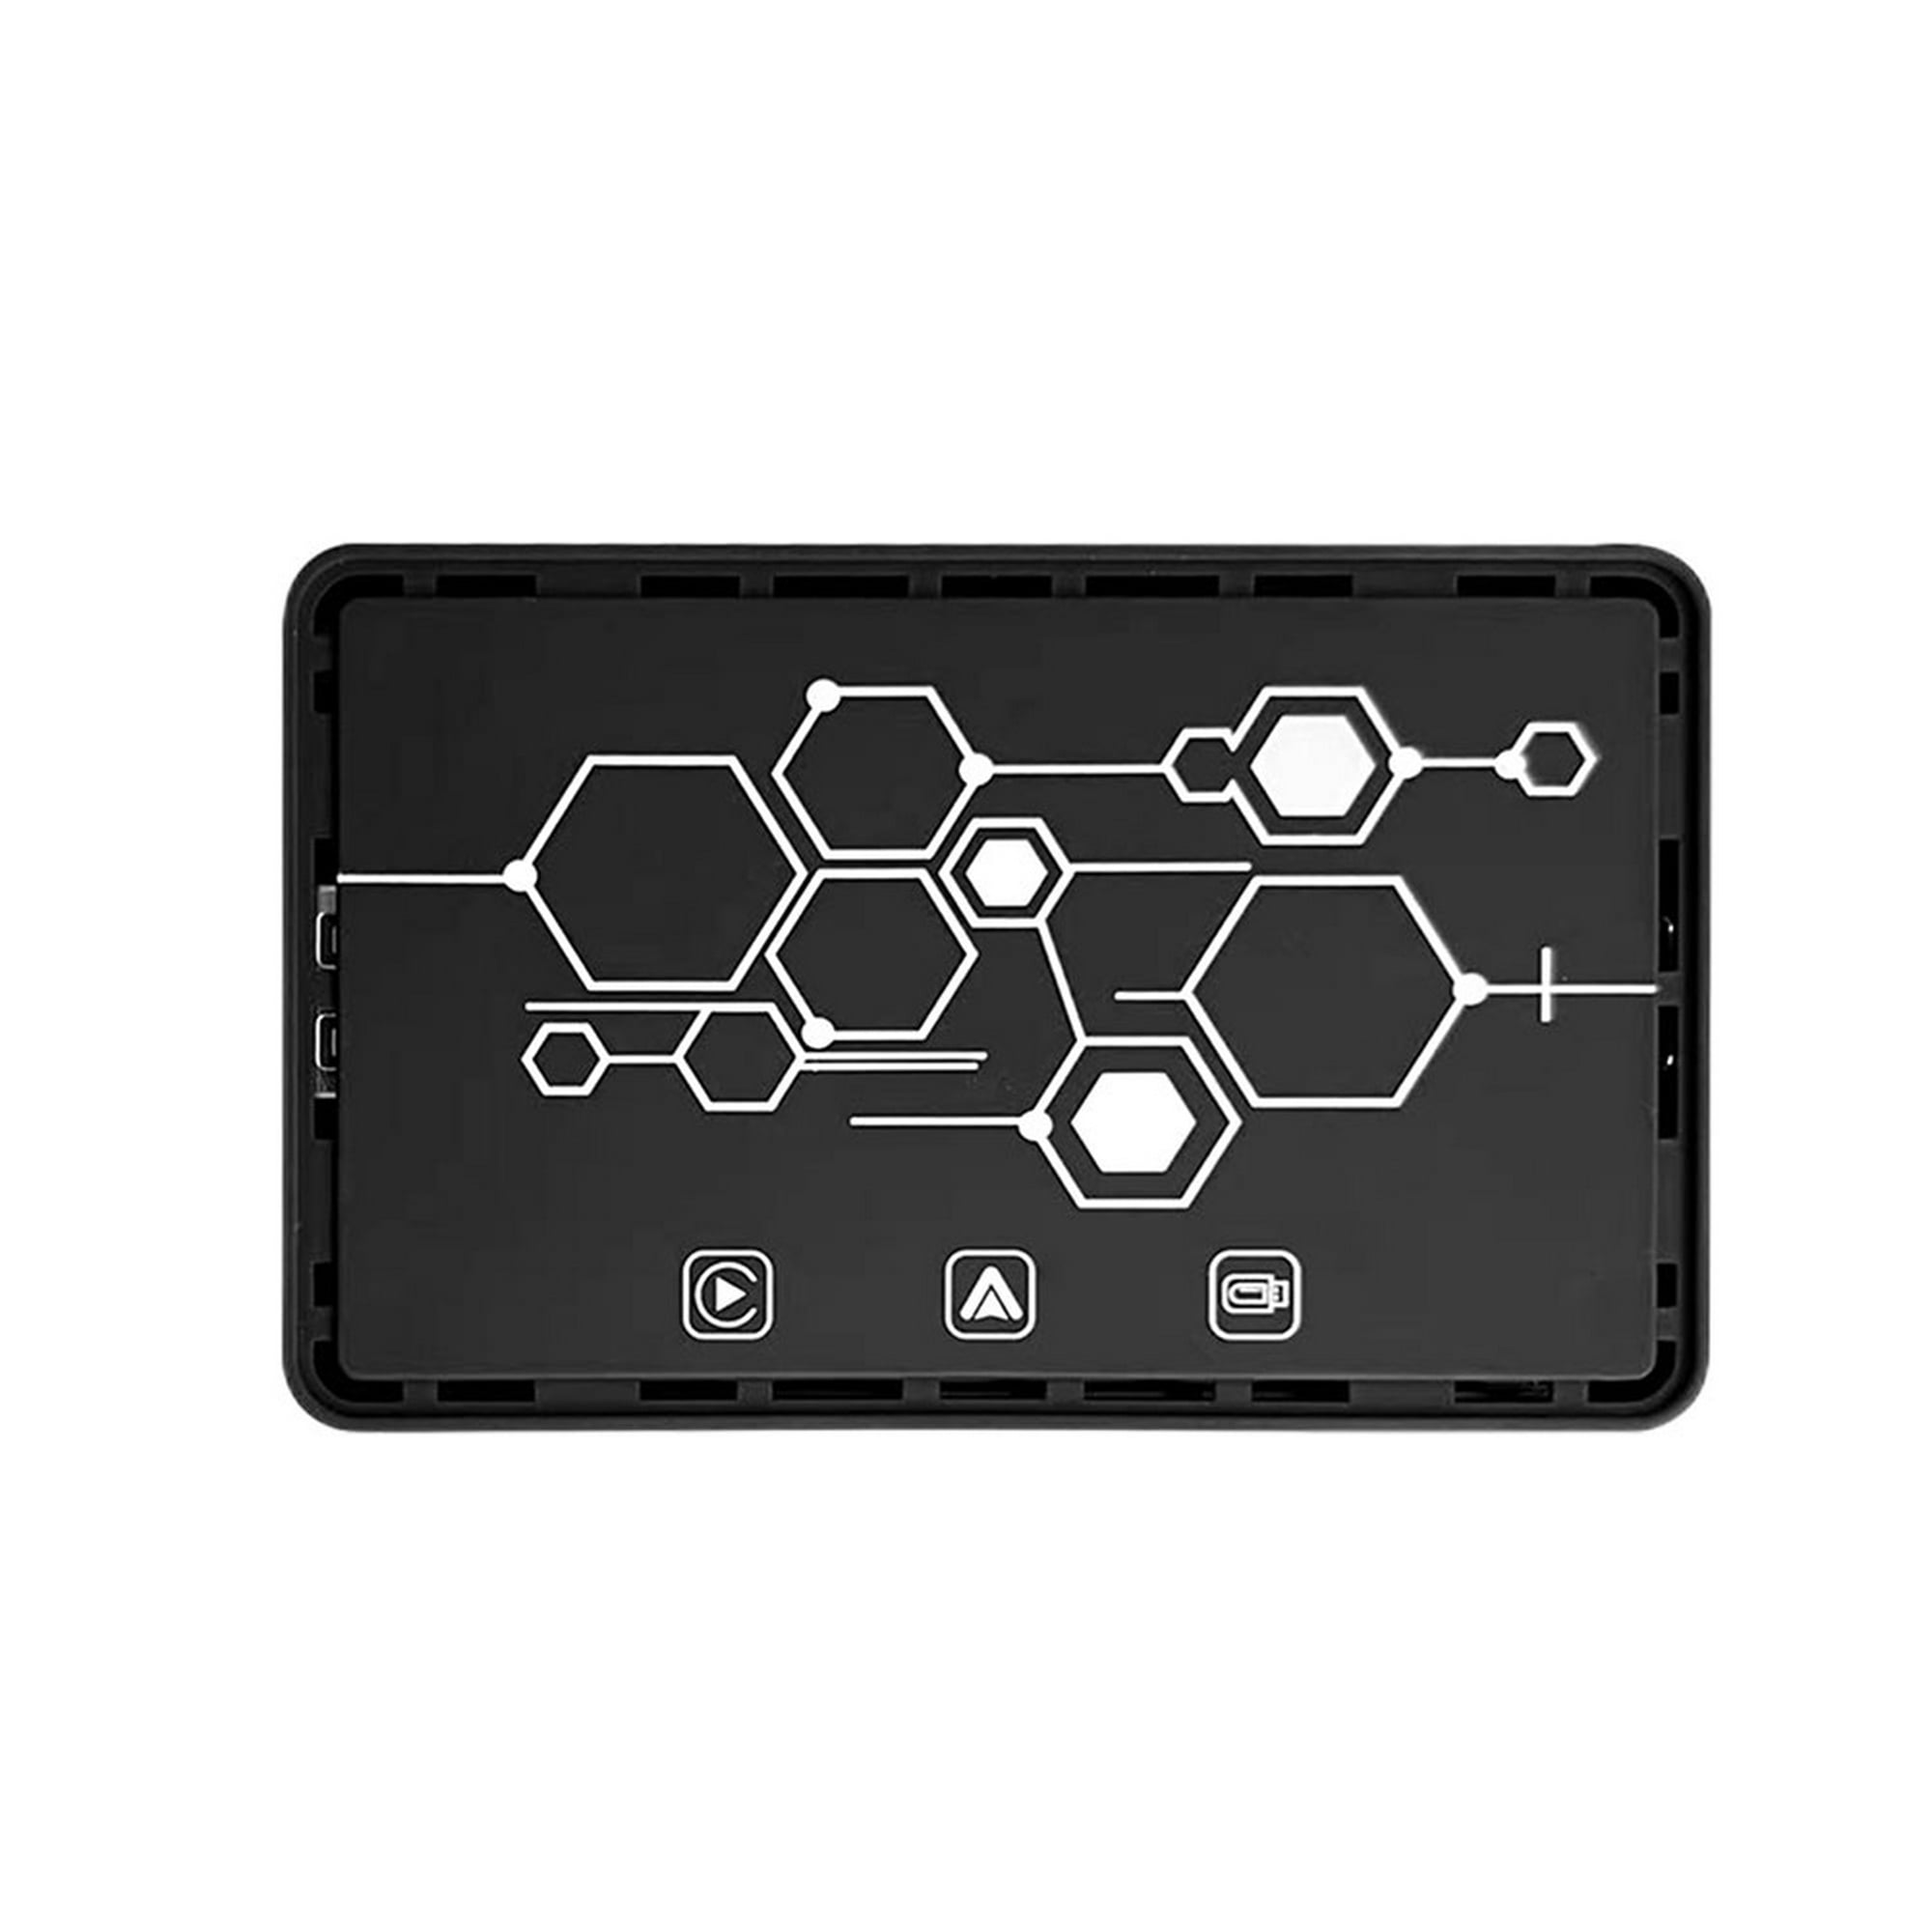 Carplay inalámbrico Android Auto AI Box compatible con Bluetooth para  teléfono Android Auto Ndcxsfigh Accesorios para autos y motos